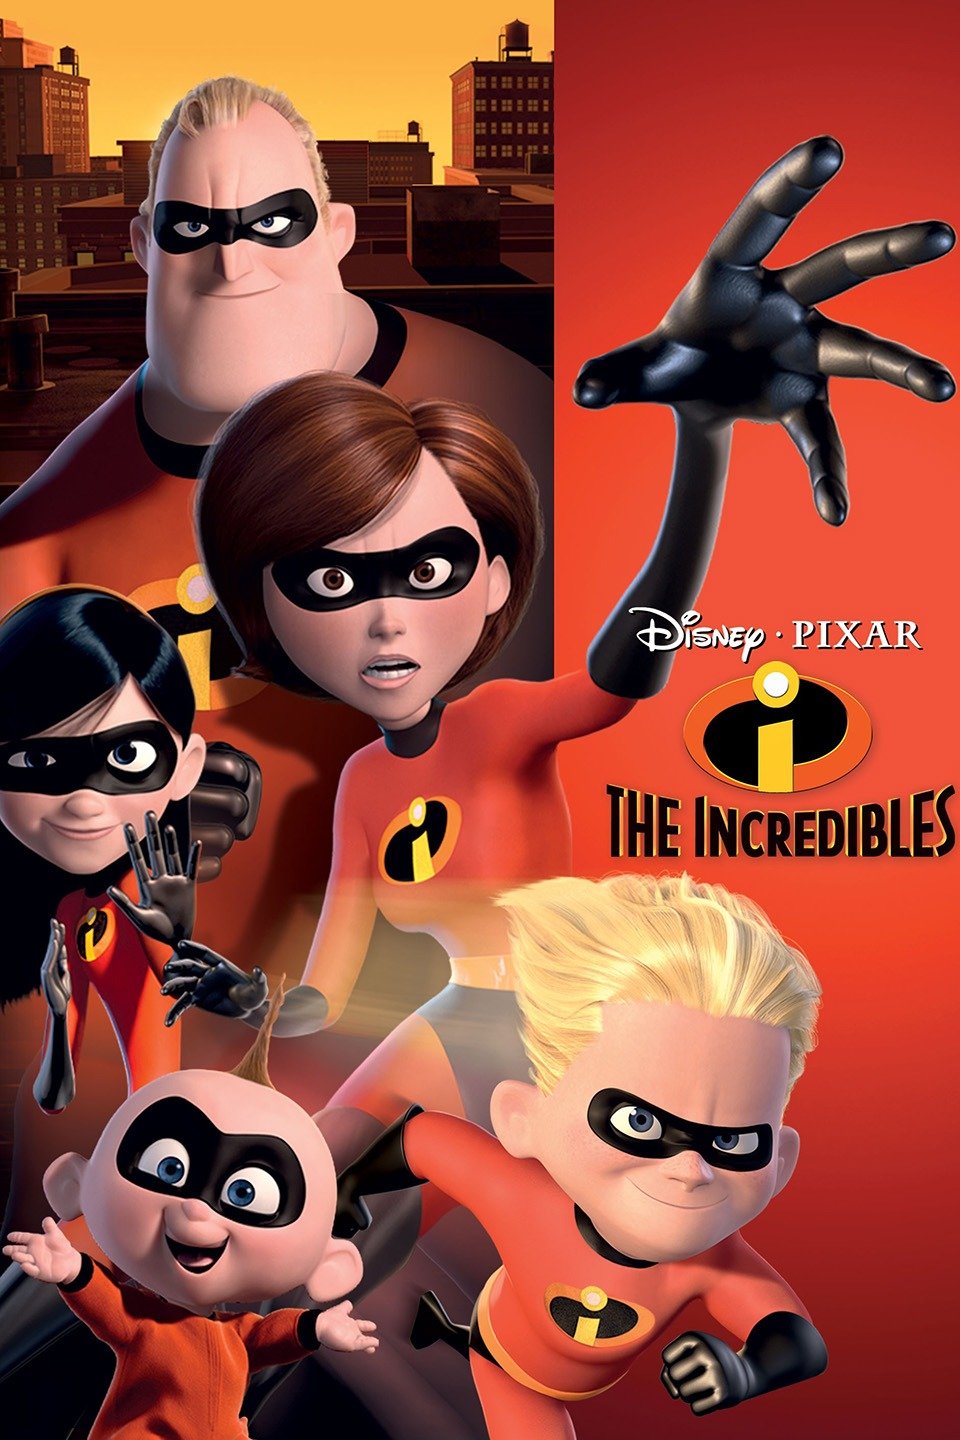 [MINI-HD] The Incredibles (2004) รวมเหล่ายอดคนพิทักษ์โลก [1080p] [พากย์ไทย 5.1 + อังกฤษ 5.1] [บรรยายไทย + อังกฤษ] [เสียงไทย + ซับไทย] [ONE2UP]